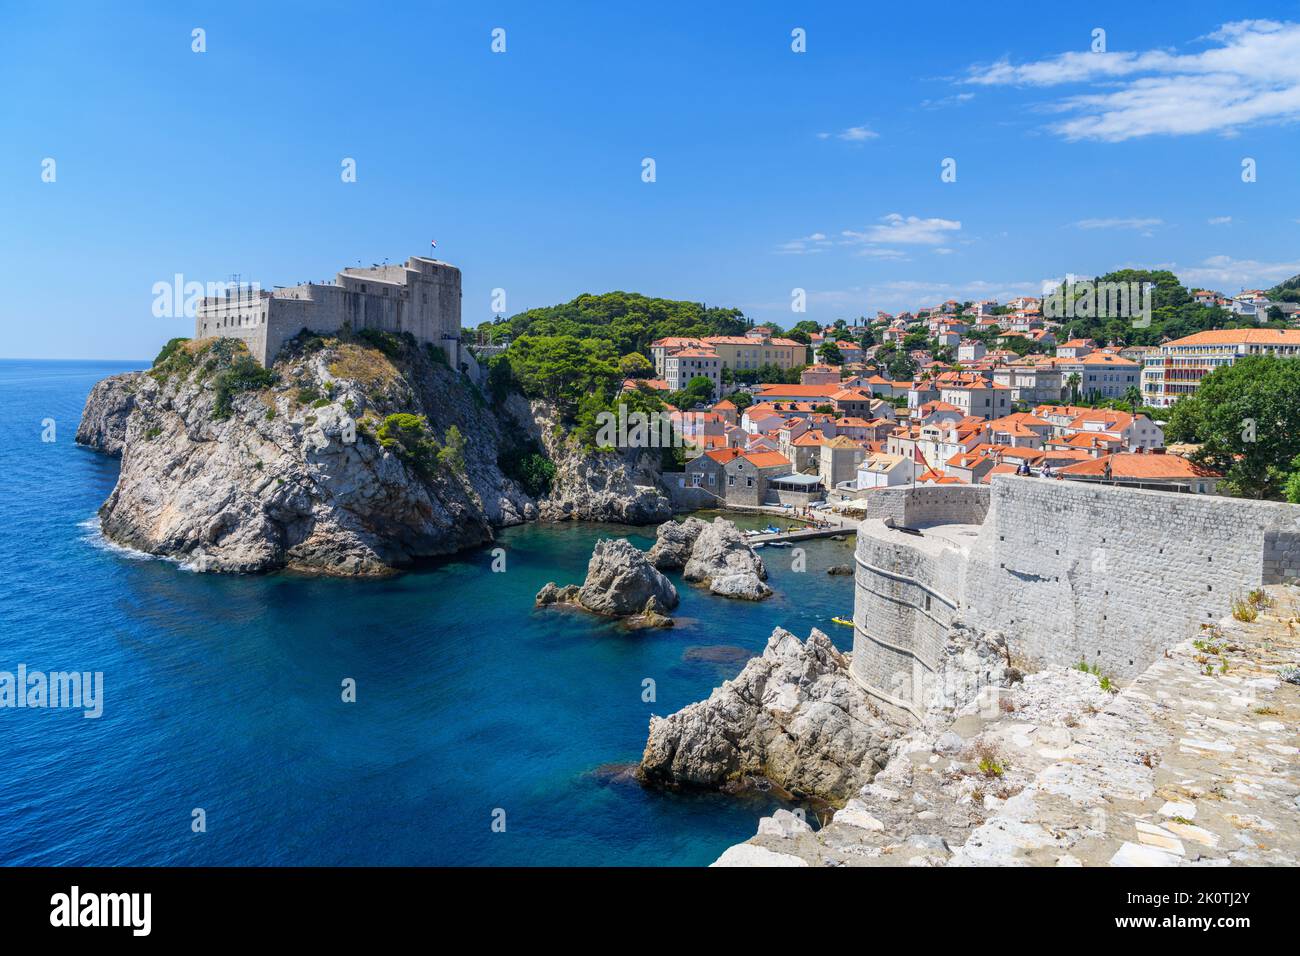 Blick auf die Festung Lovrijenac von den Mauern der Altstadt, Dubrovnik, Kroatien Stockfoto